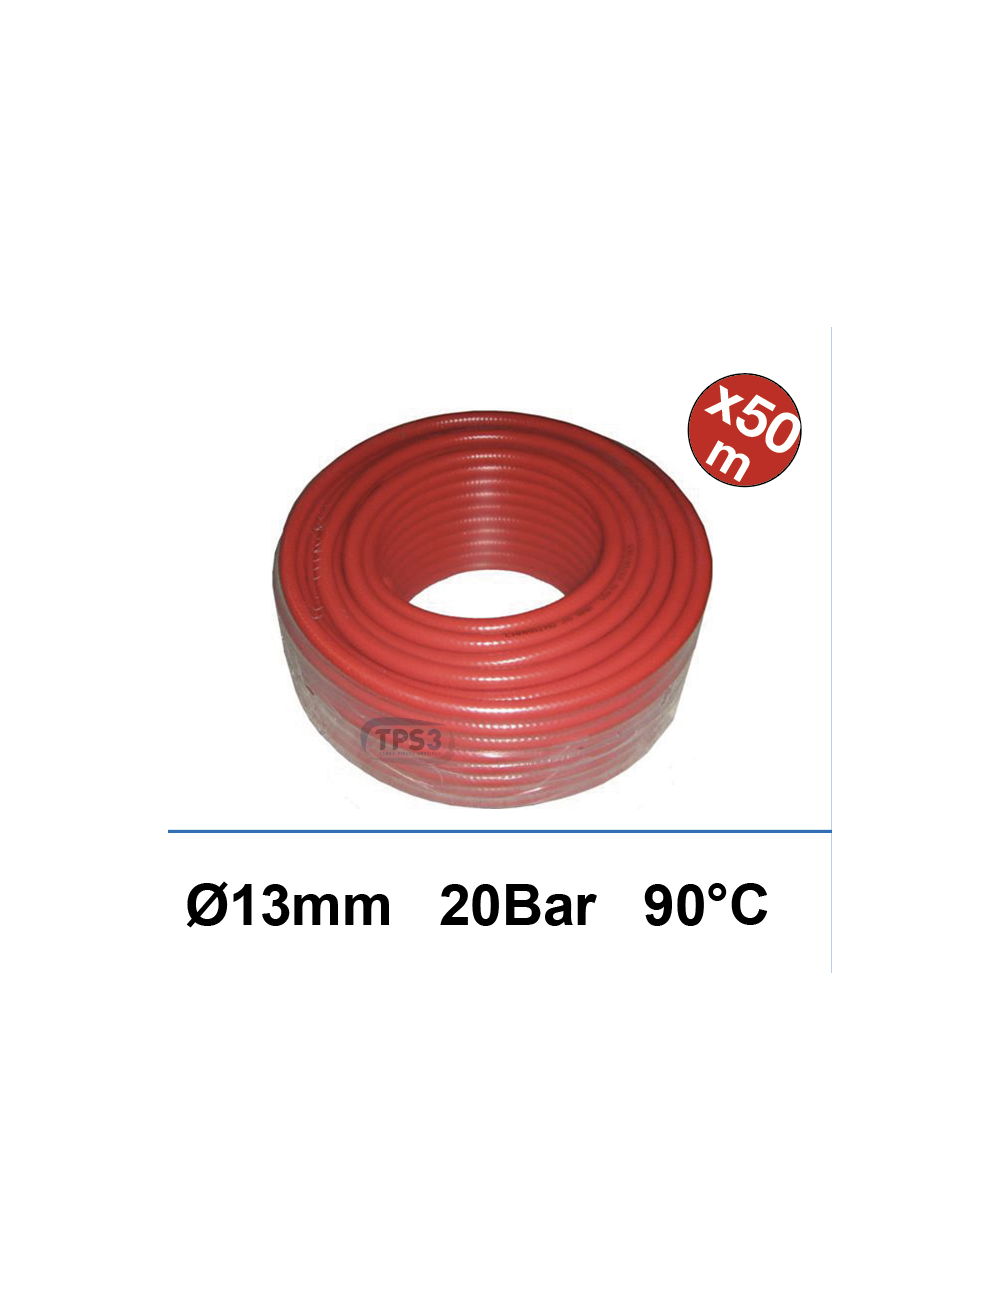 Couronne 50m tuyau d'alimentation eau rouge Ø 13 int 20B/90°C